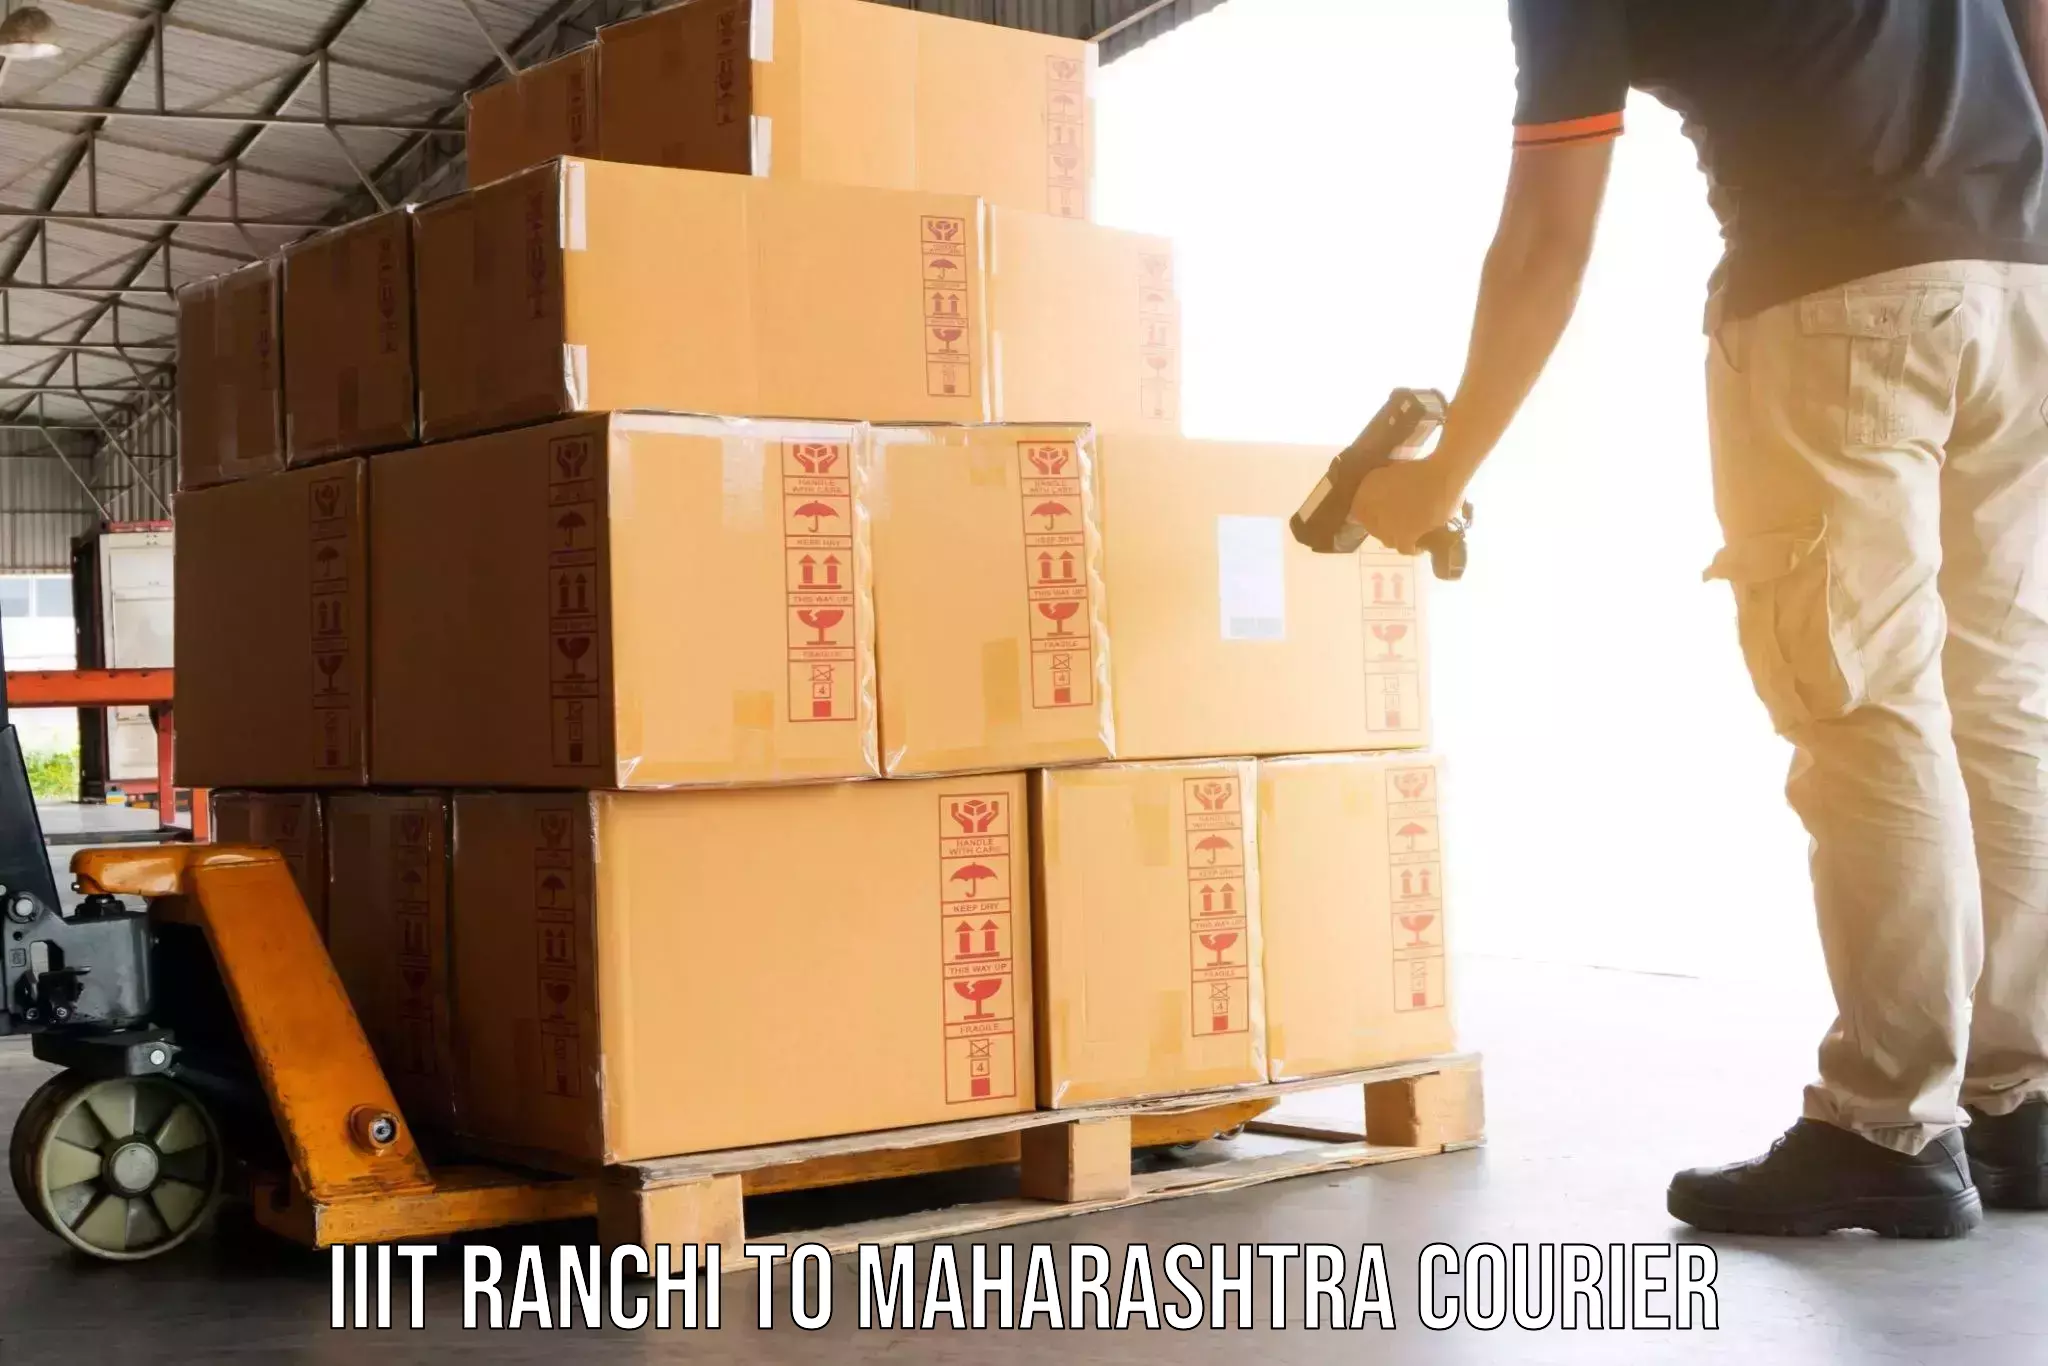 Quality moving company IIIT Ranchi to Navi Mumbai